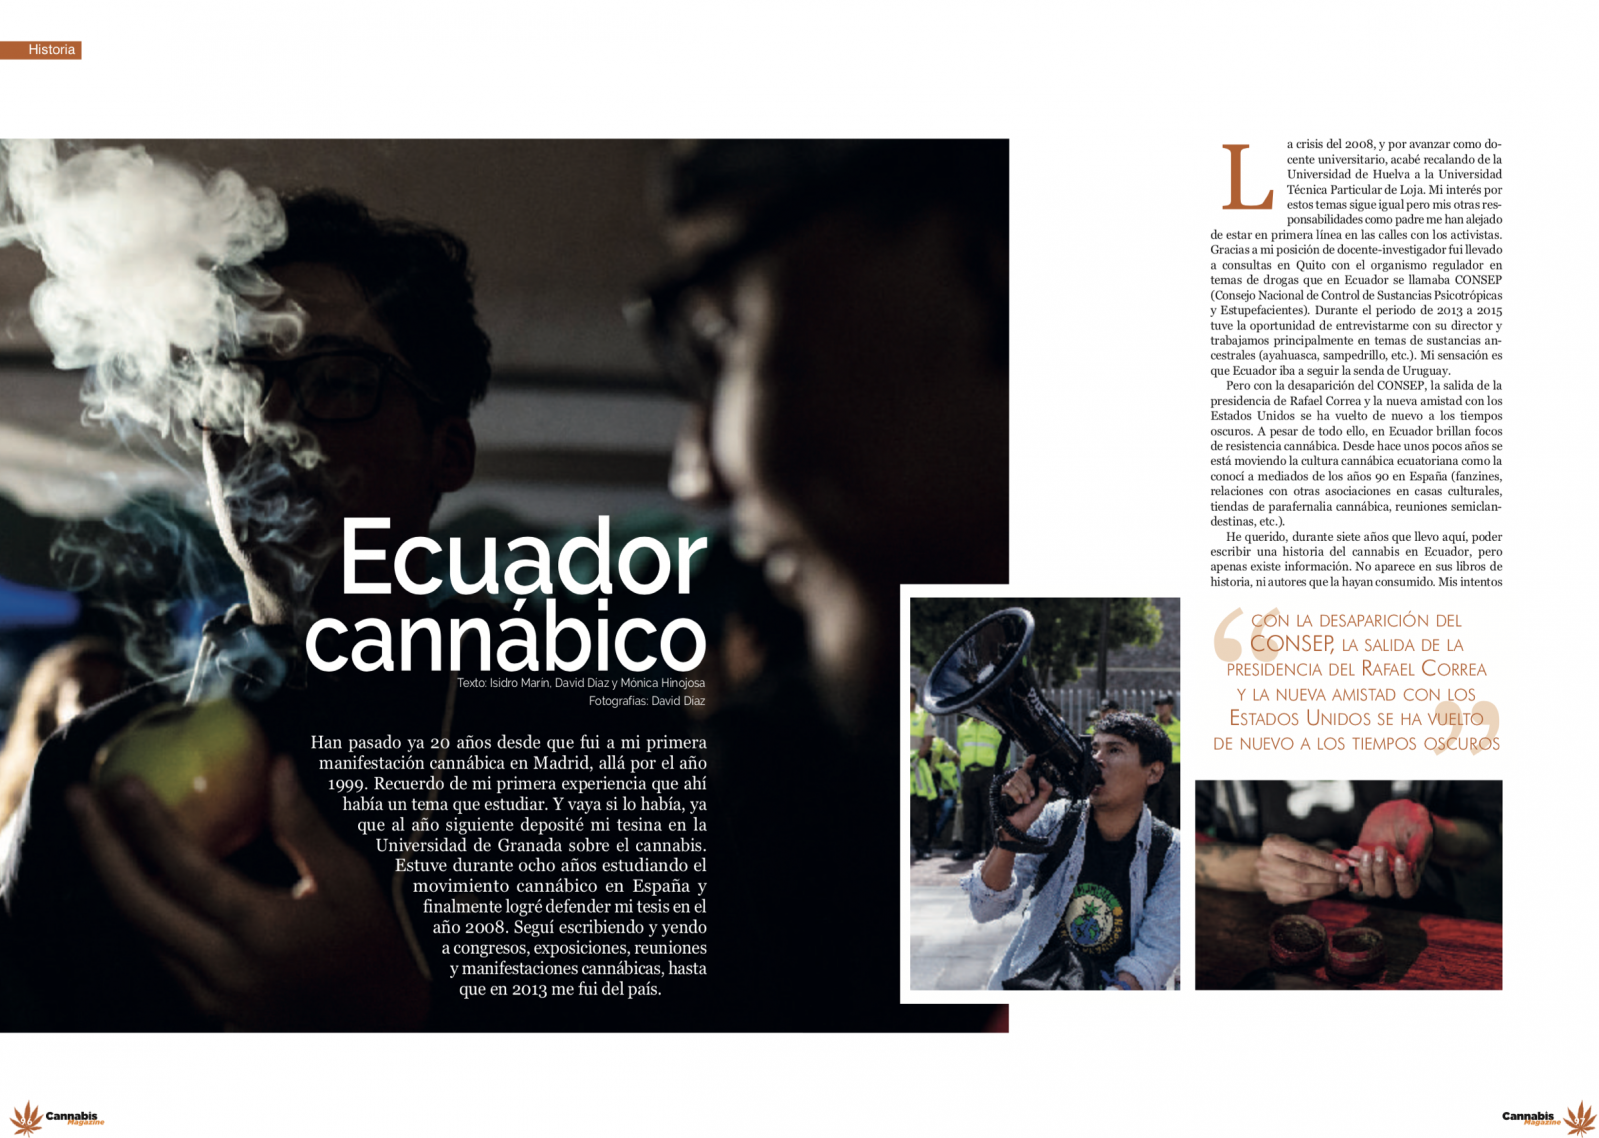 Thumbnail of Ecuador Cannábico 